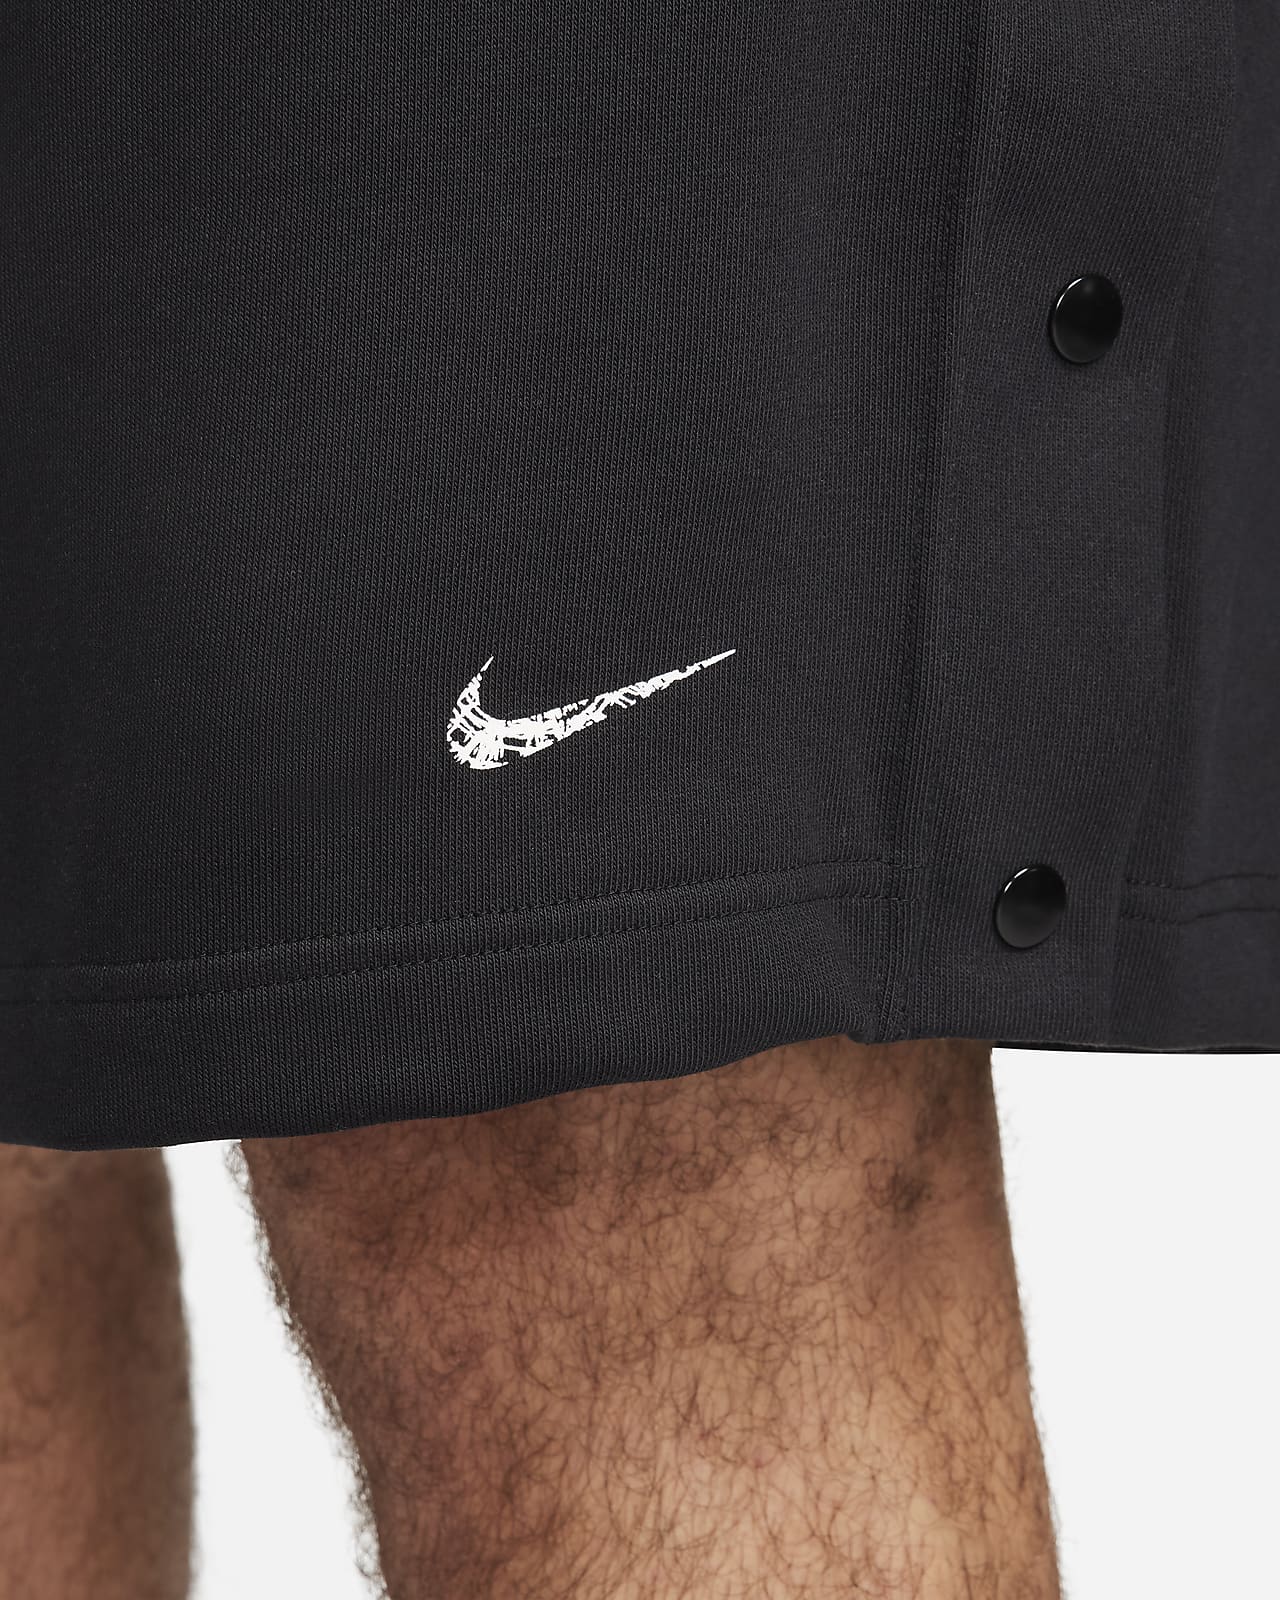 Nike Dri-FIT Men's 8 Graphic Baseball Shorts.